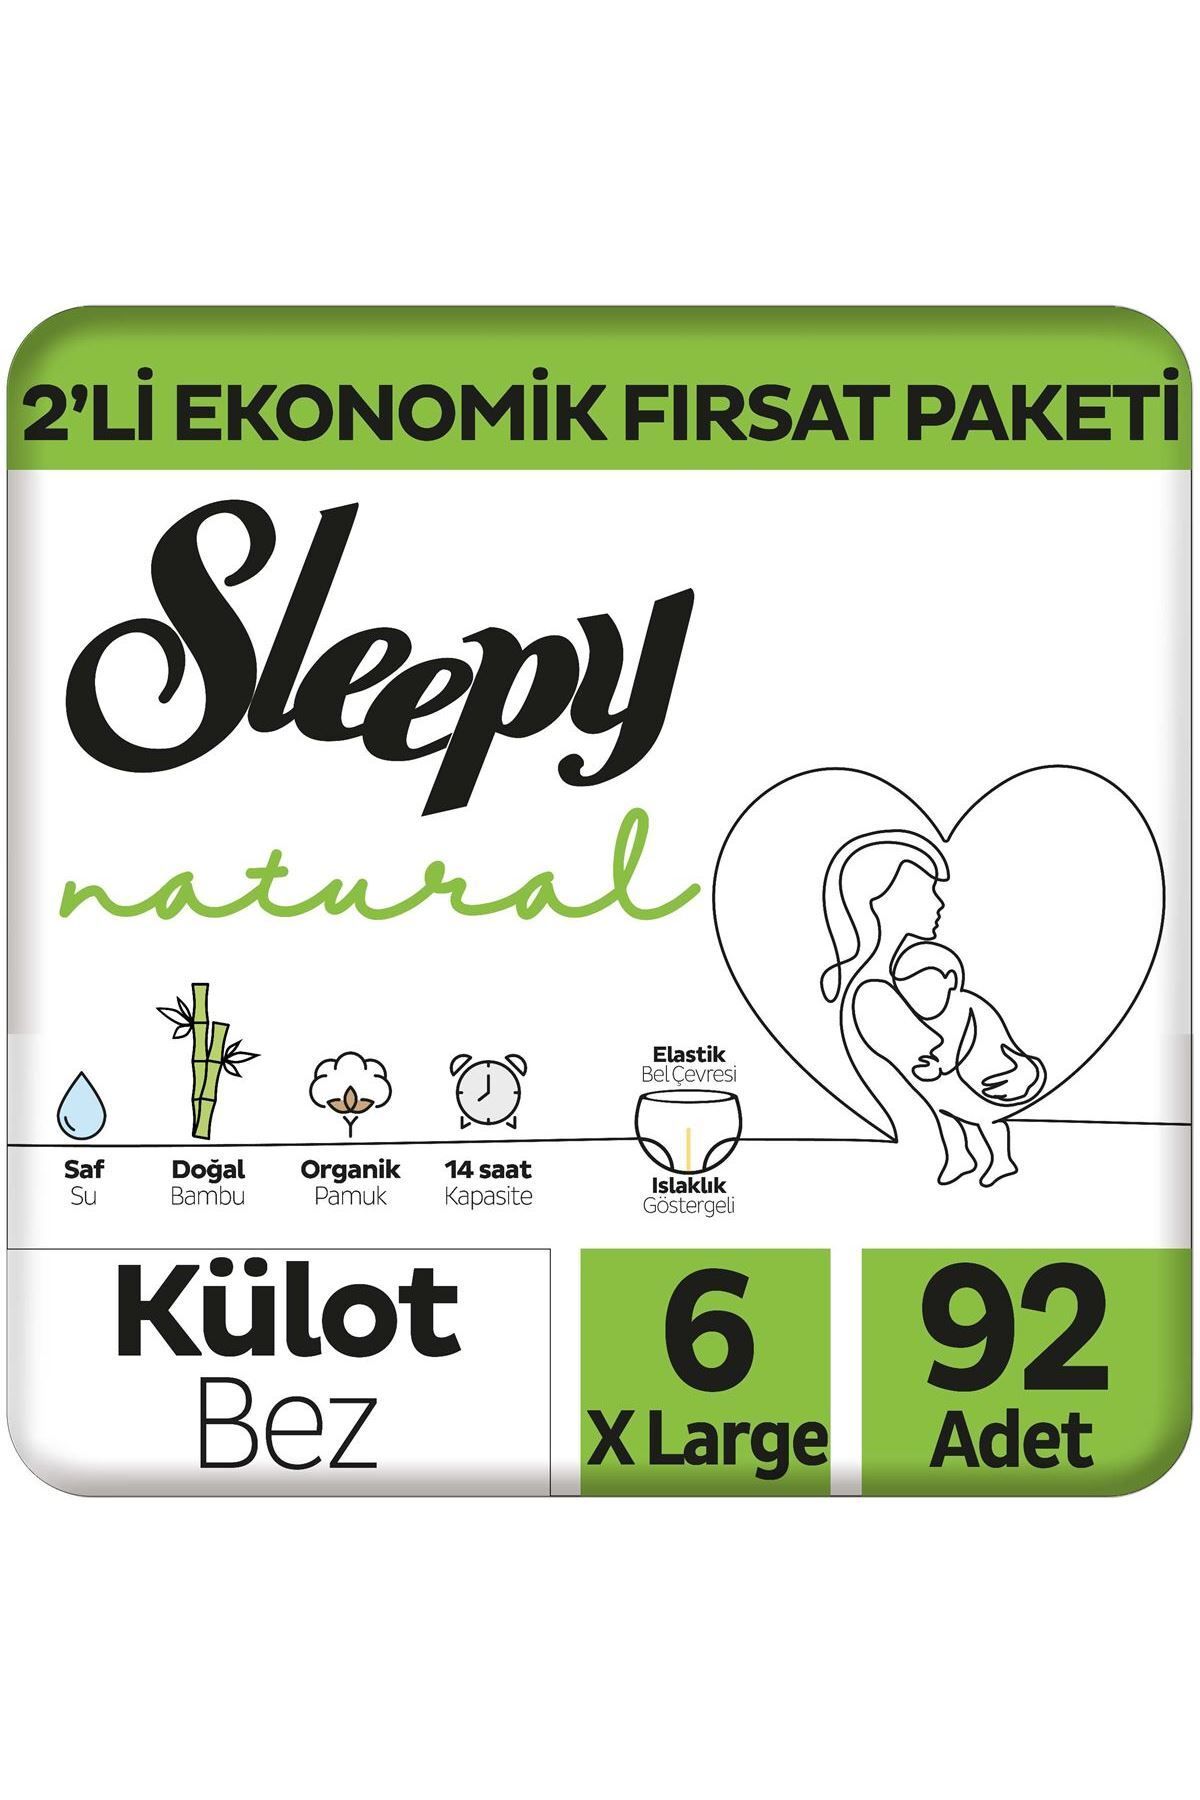 Sleepy Natural 2'li Ekonomik Fırsat Paketi Külot Bez 6 Numara Xlarge 92 Adet